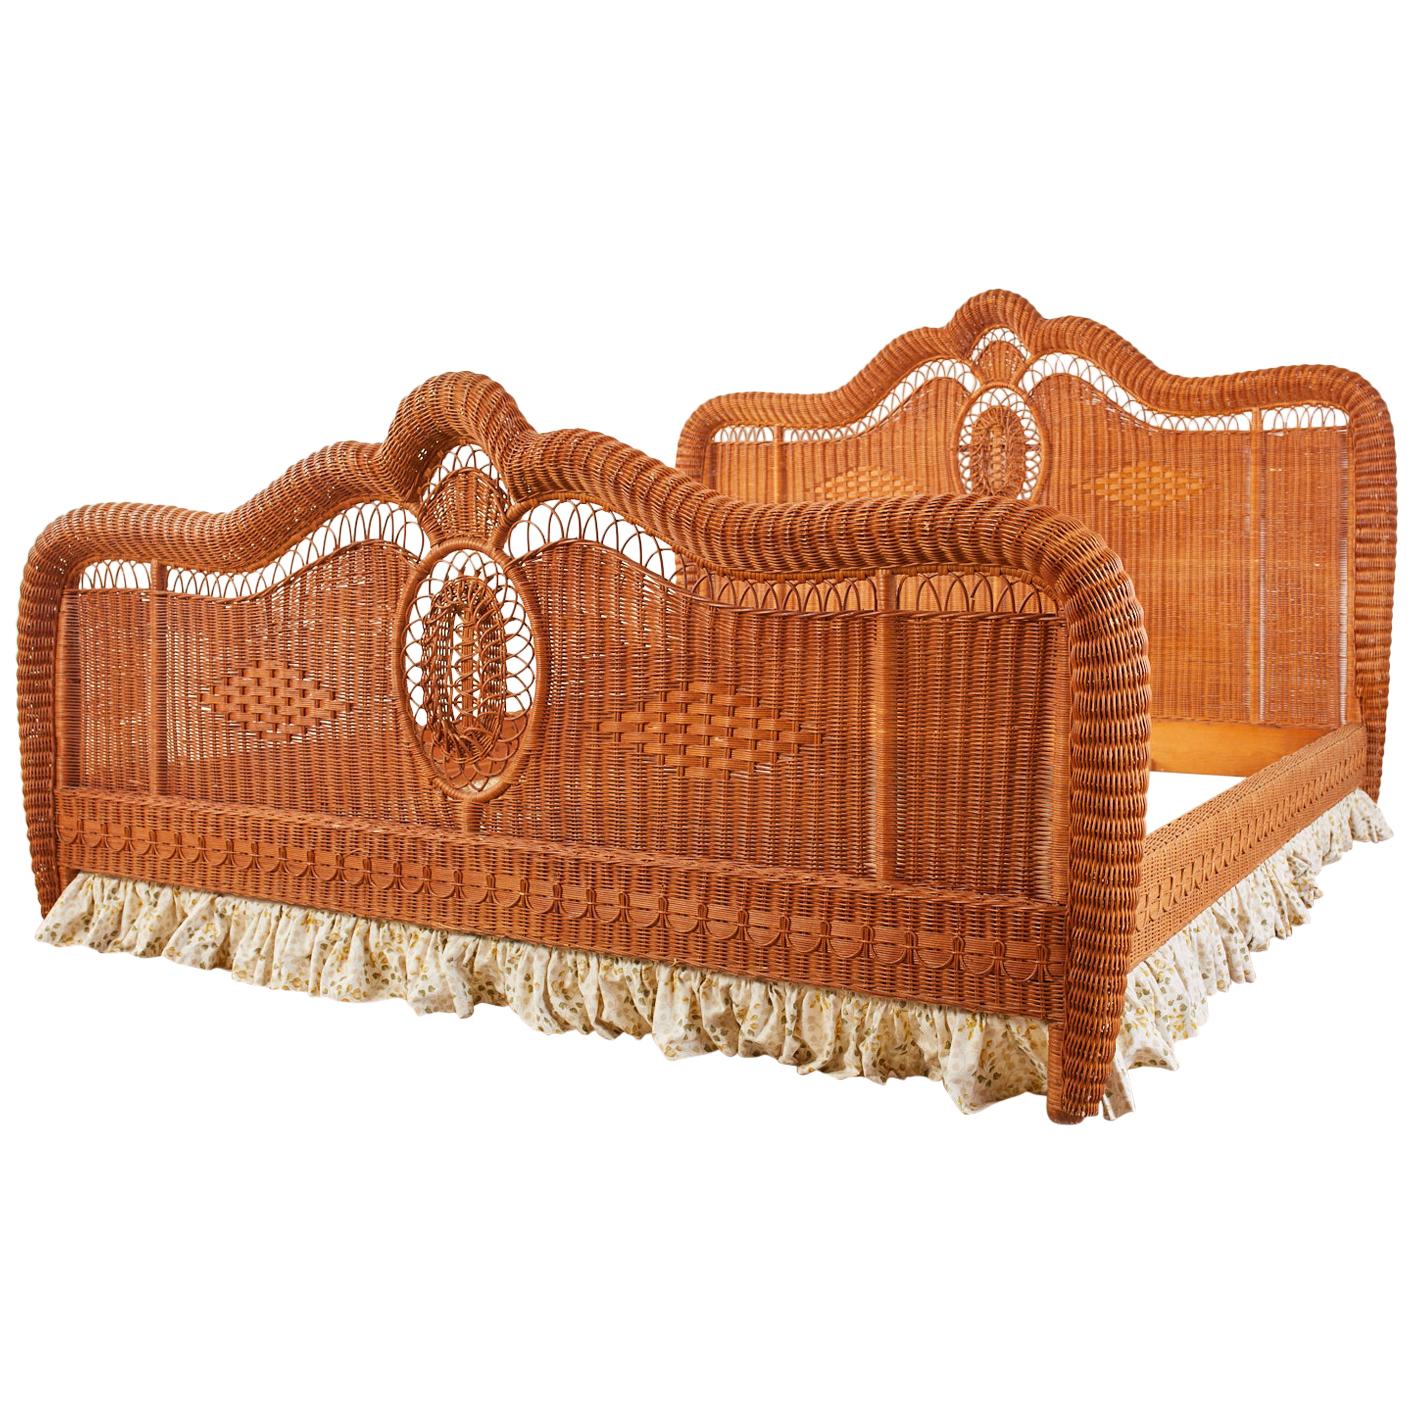 Ralph Lauren Style Bohemian Wicker Bed